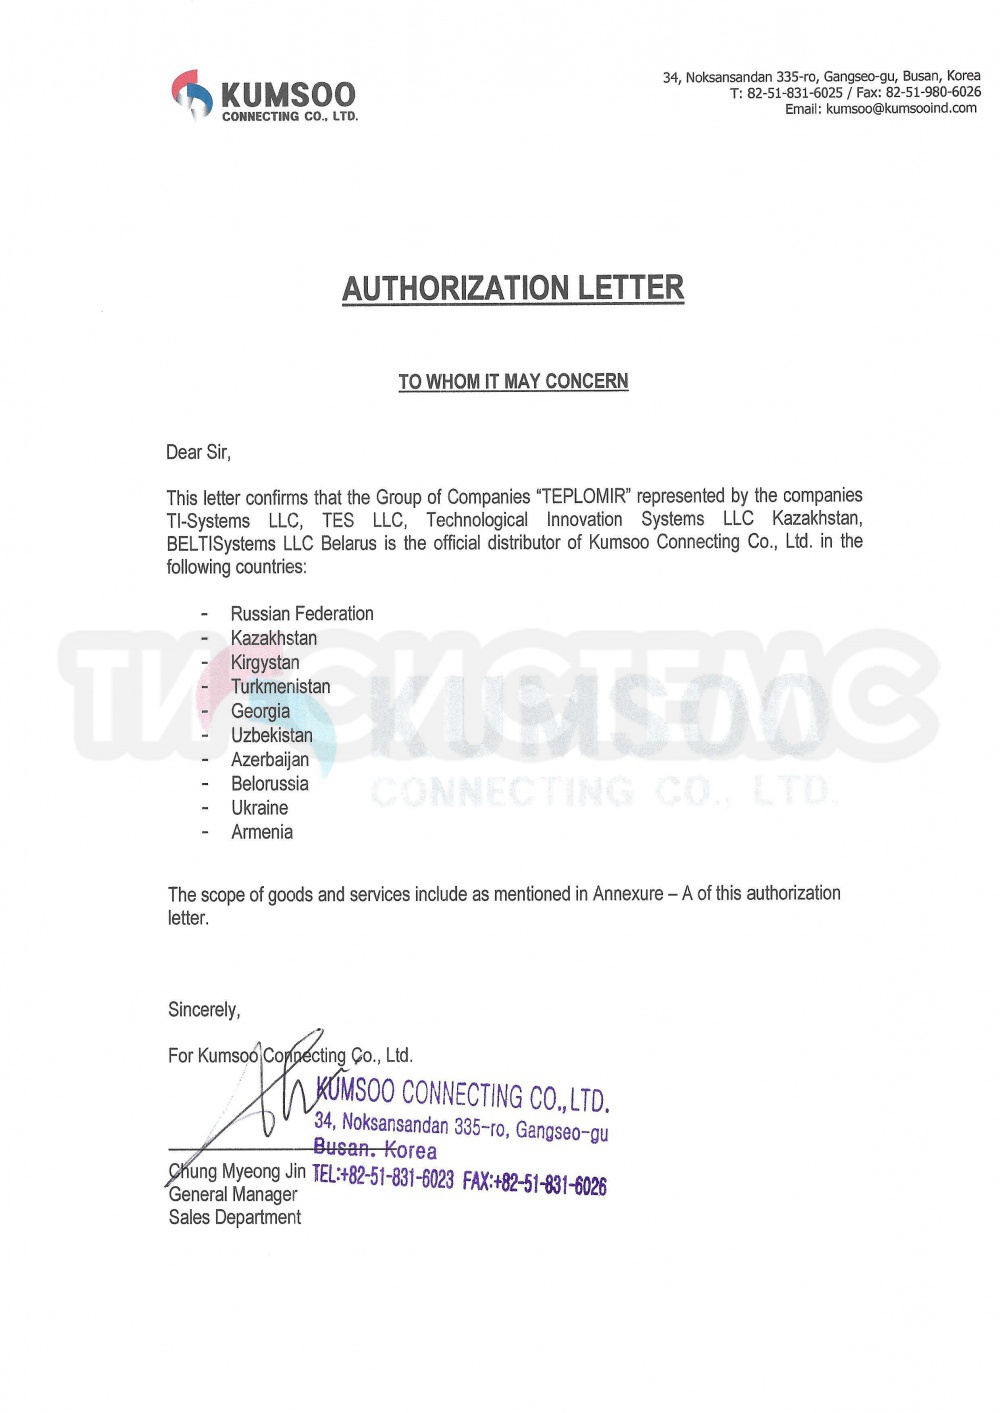 Авторизационное письмо KUMSOO CONNECTING